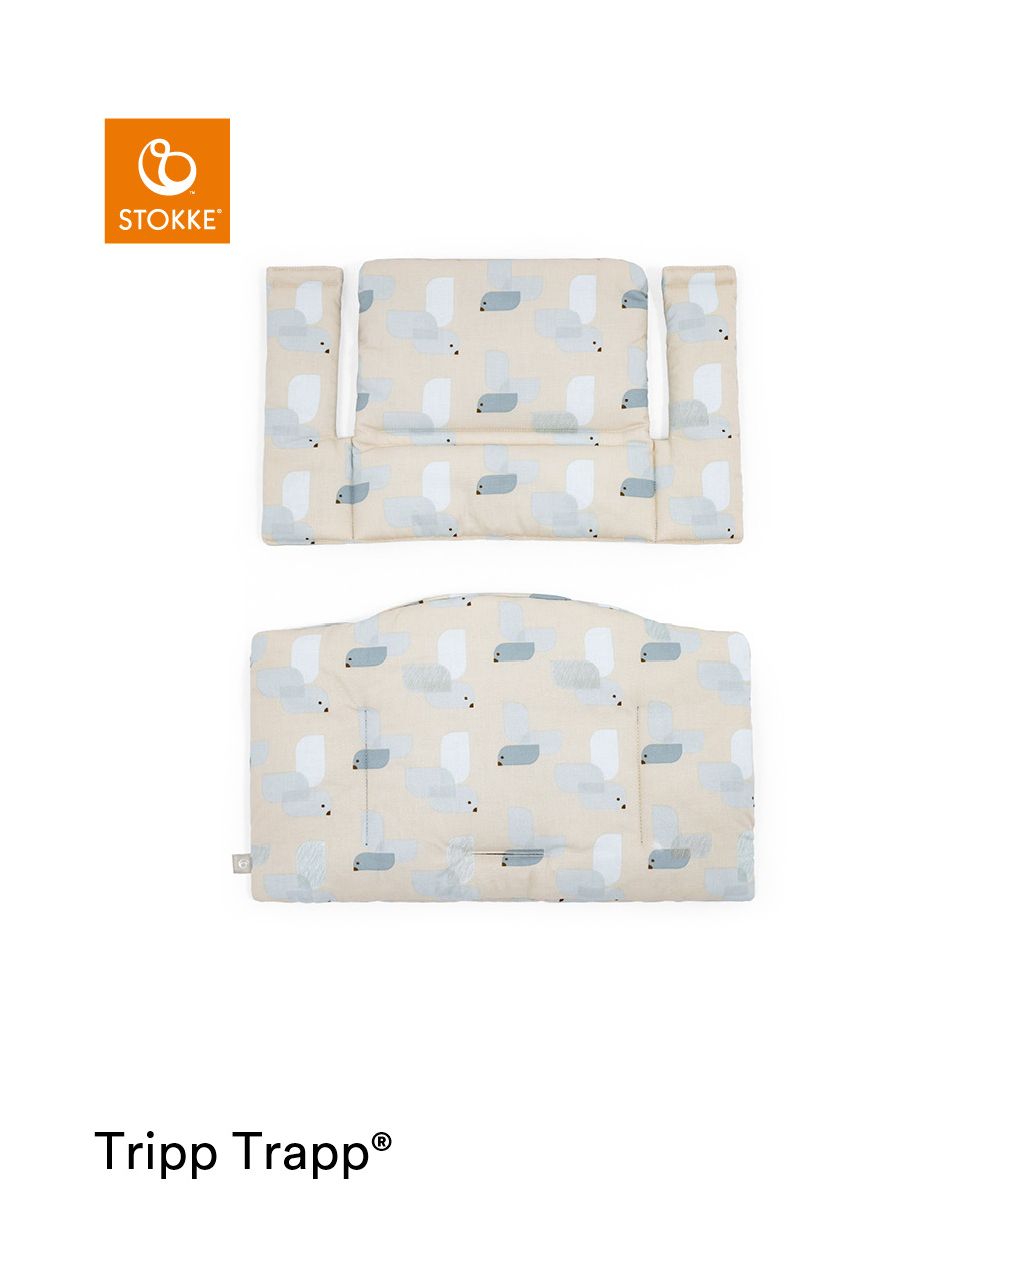 Tripp trapp® classic cushion birds blue ocs
cuscino per seggiolone, morbido e avvolgente per il tuo bambino